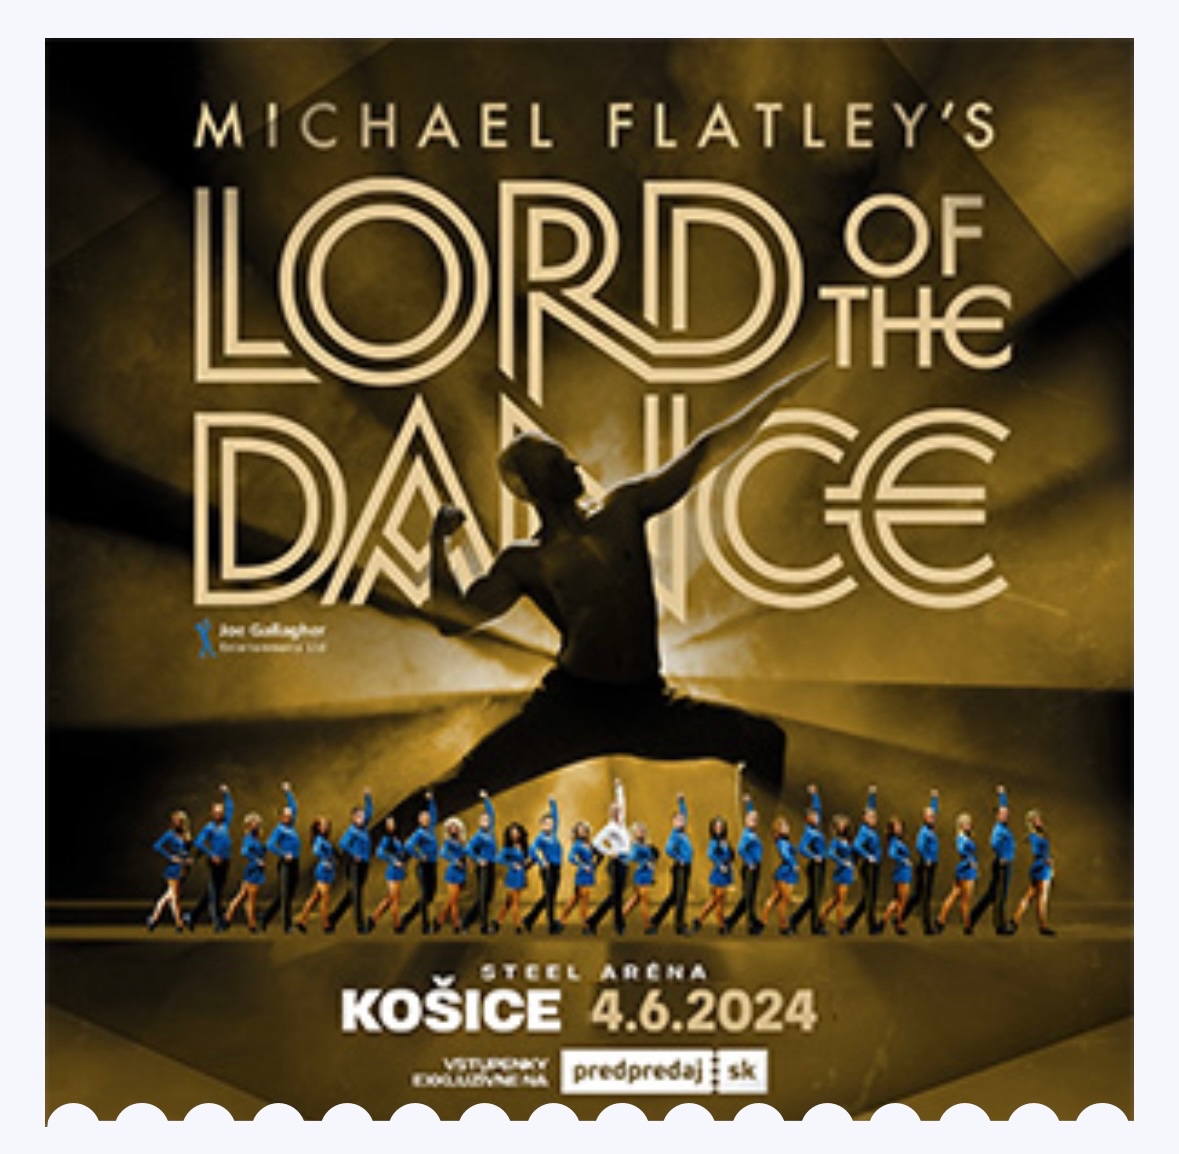 ZNÍŽENÁ CENA 2 lístky na Lord of the dance Košice